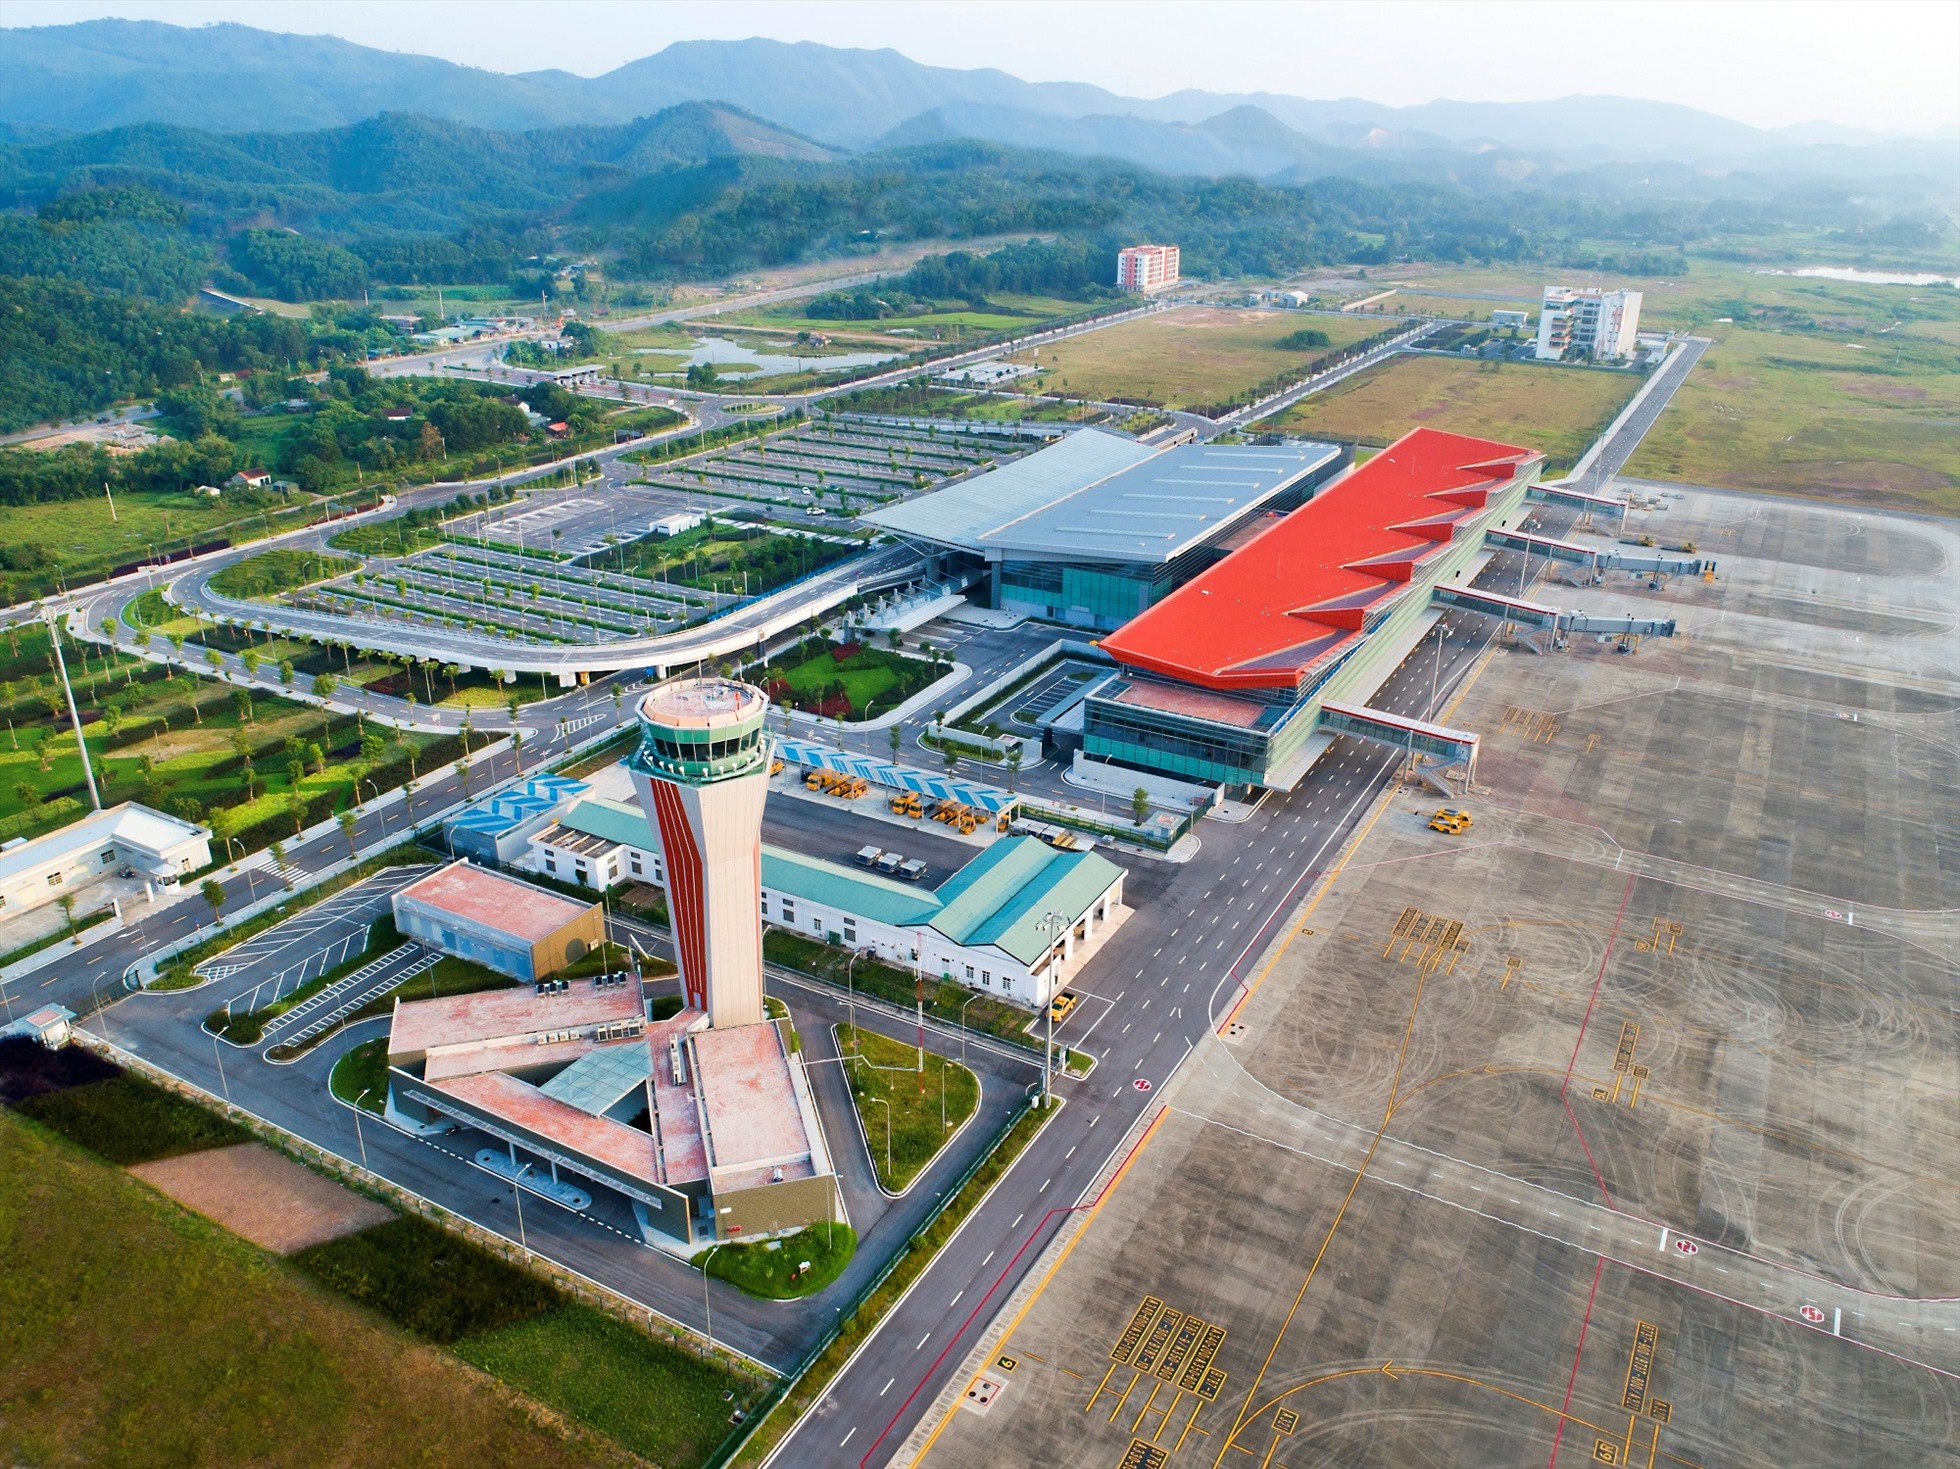 Cảng hàng không quốc tế Vân Đồn - Cảng hàng không tư nhân duy nhất của cả nước hiện nay. Ảnh: Nguyễn Hùng